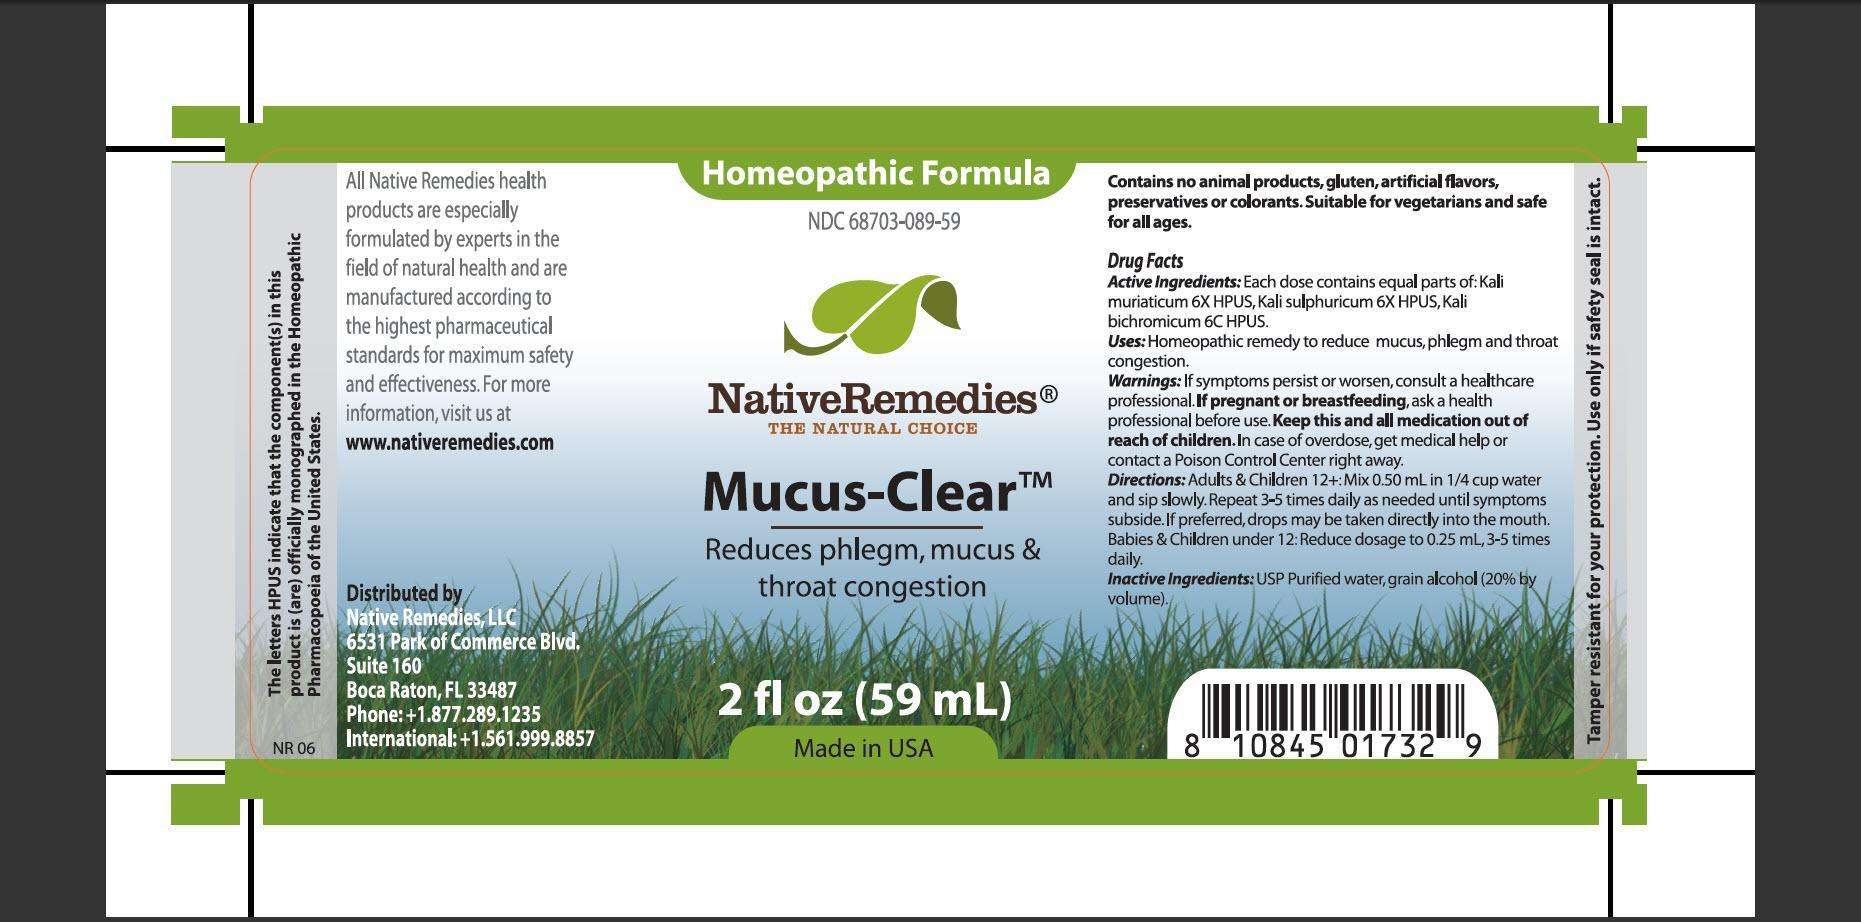 Mucus-Clear